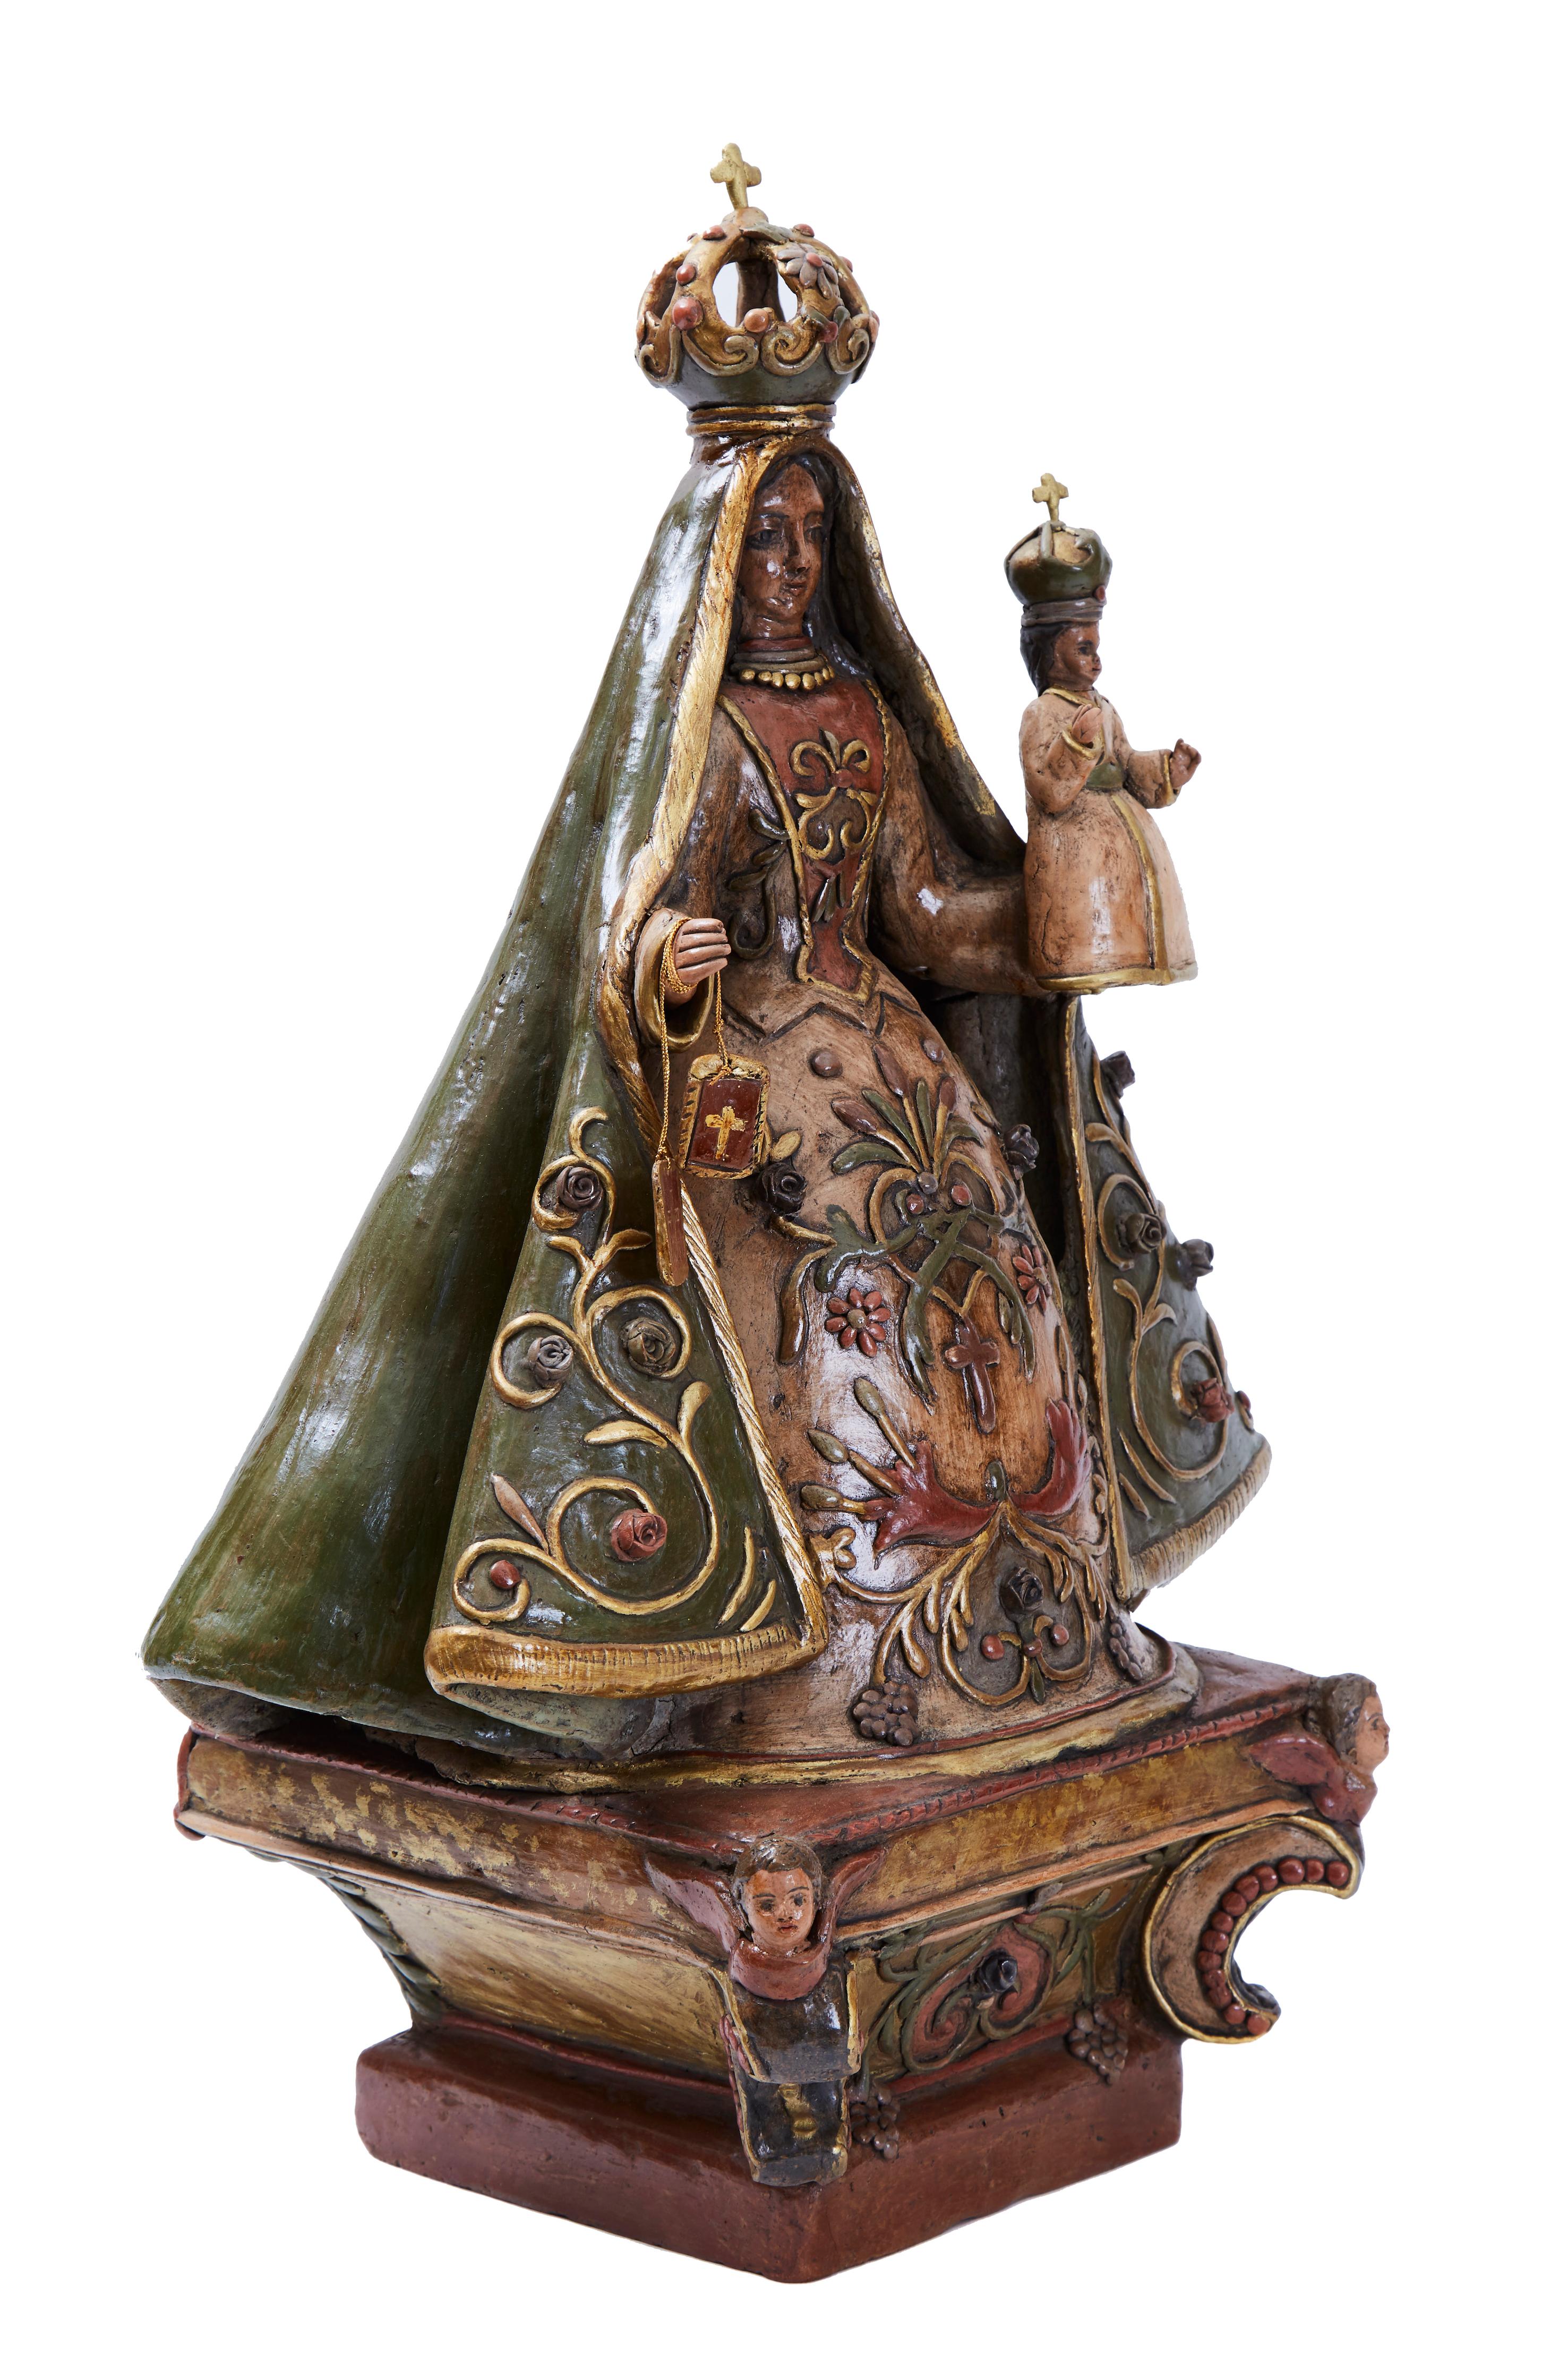 La Virgen del Carmen, Pottery & Ceramics, Mexican Folk Art, Cactus Fine Art 5